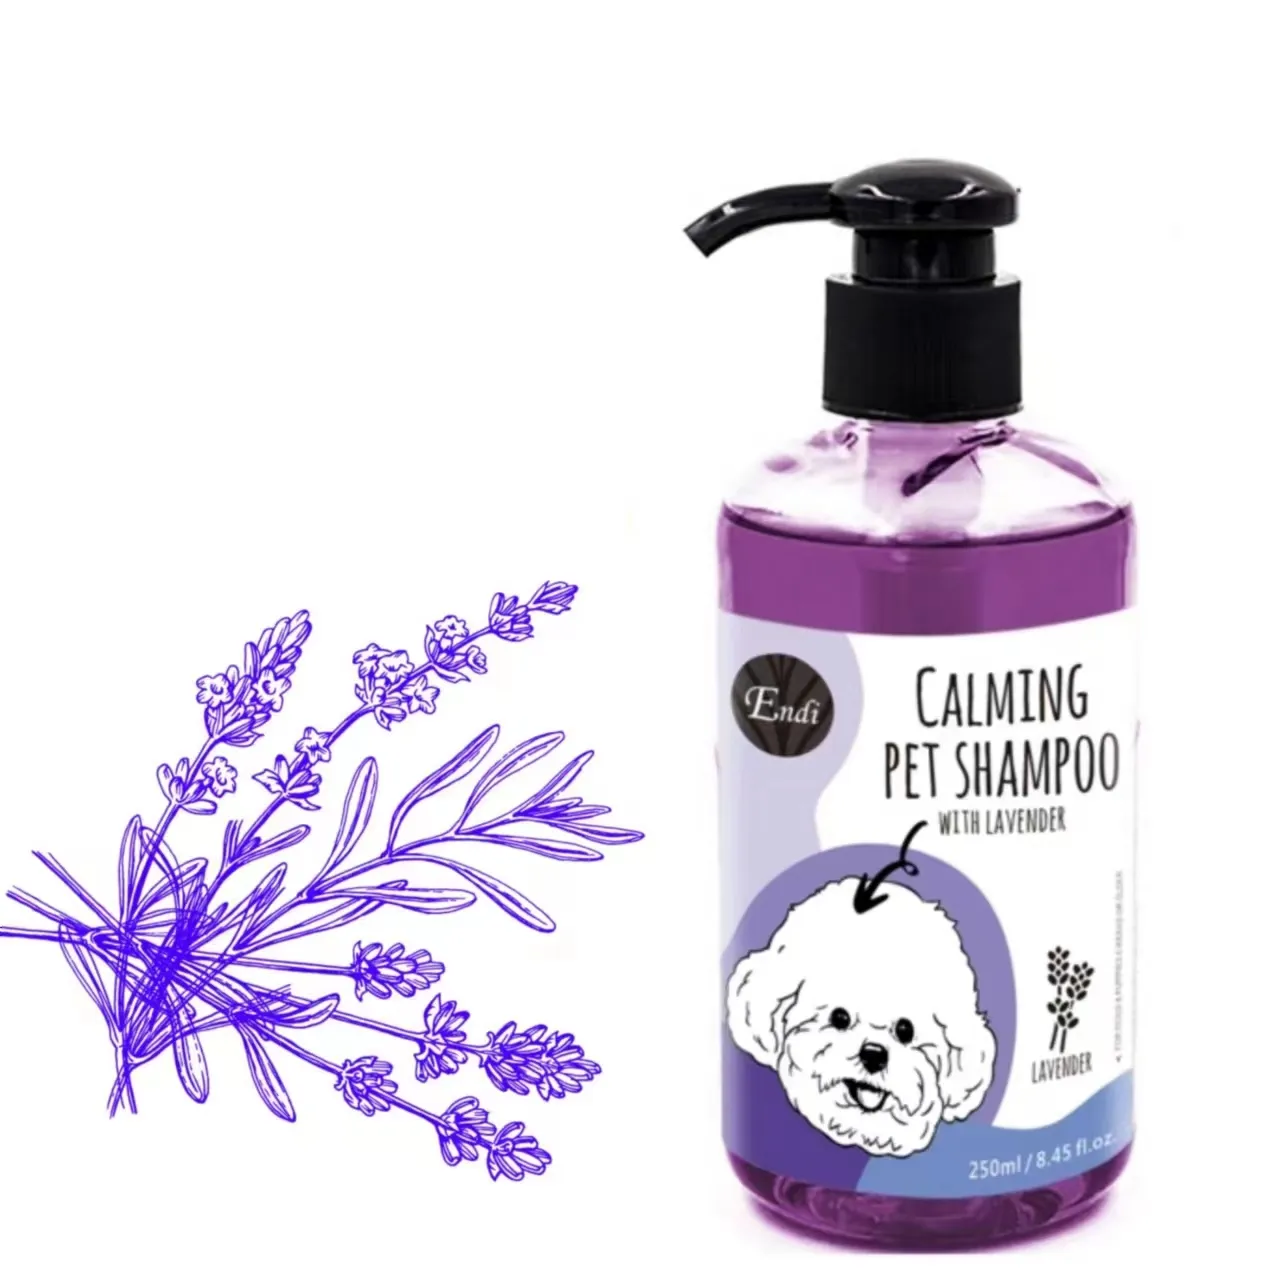 Özel etiket doğal lavanta Extacts ve aspir yağı bakım evcil hayvan şampuanı organik toptan köpek şampuanı